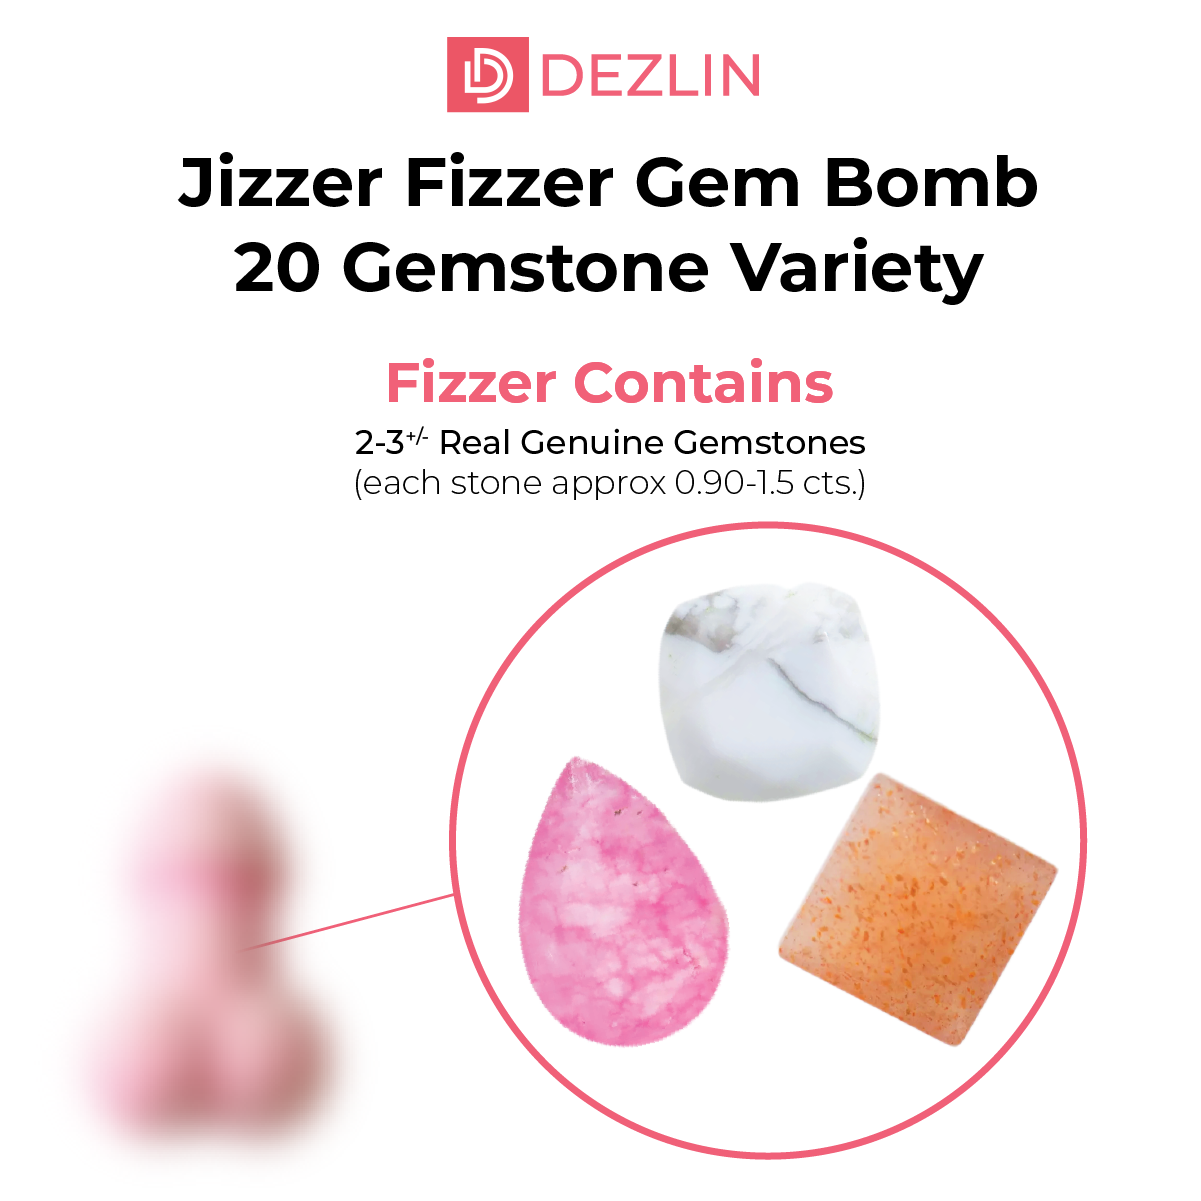 Jizzer Fizzer Gem Bomb 70+ Gemstone Variety